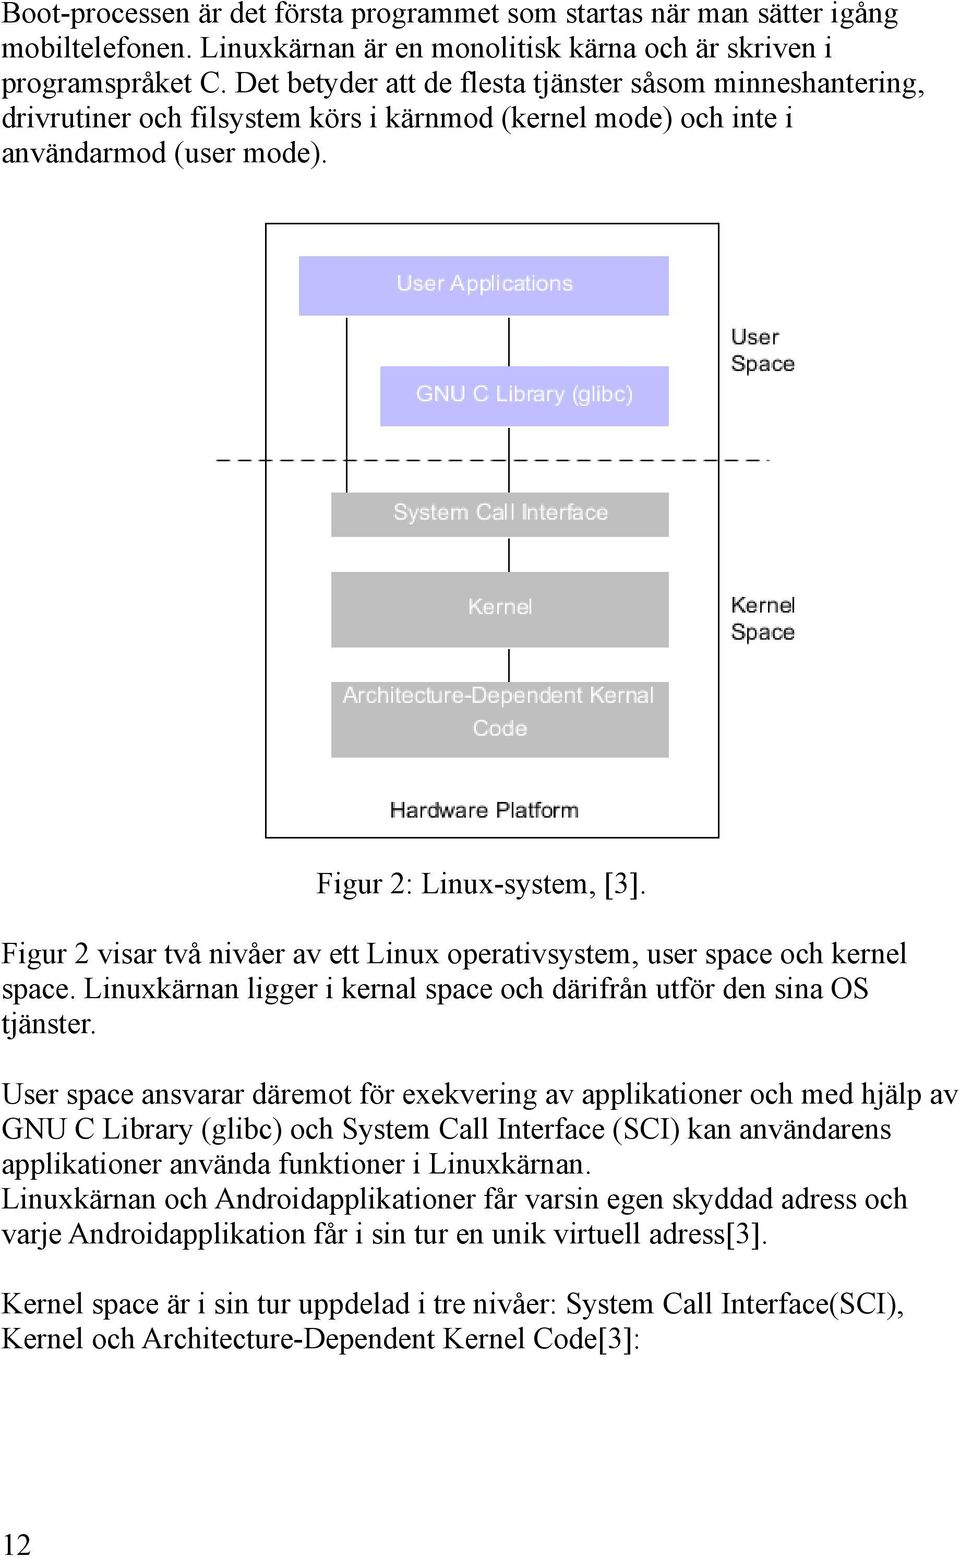 Figur 2 visar två nivåer av ett Linux operativsystem, user space och kernel space. Linuxkärnan ligger i kernal space och därifrån utför den sina OS tjänster.